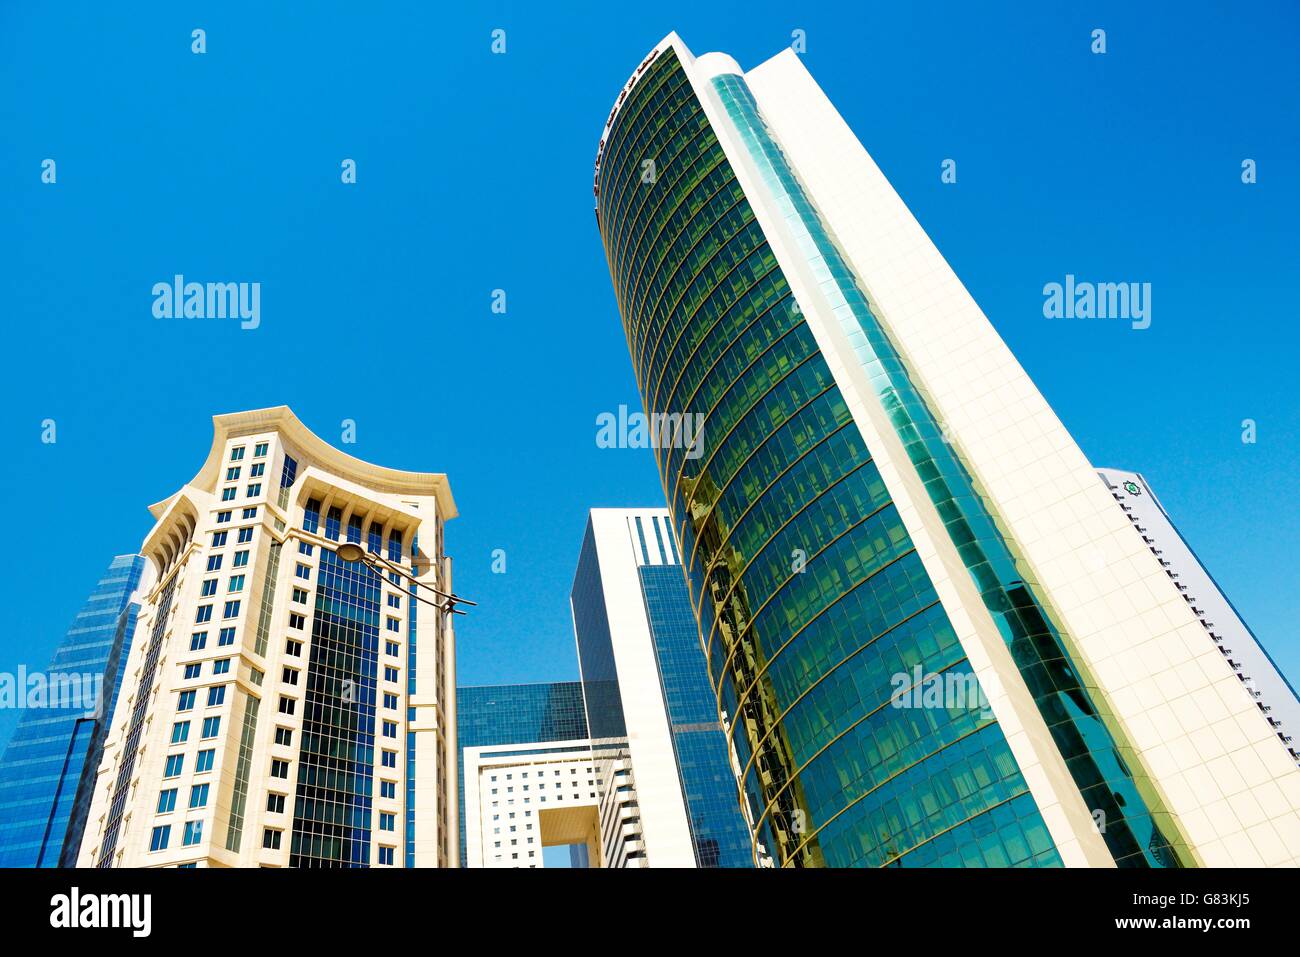 City center west bay area di doha, Qatar. majlis al taawon street. a sinistra è il Burj al qassar torre destra è del comitato olimpico tower Foto Stock